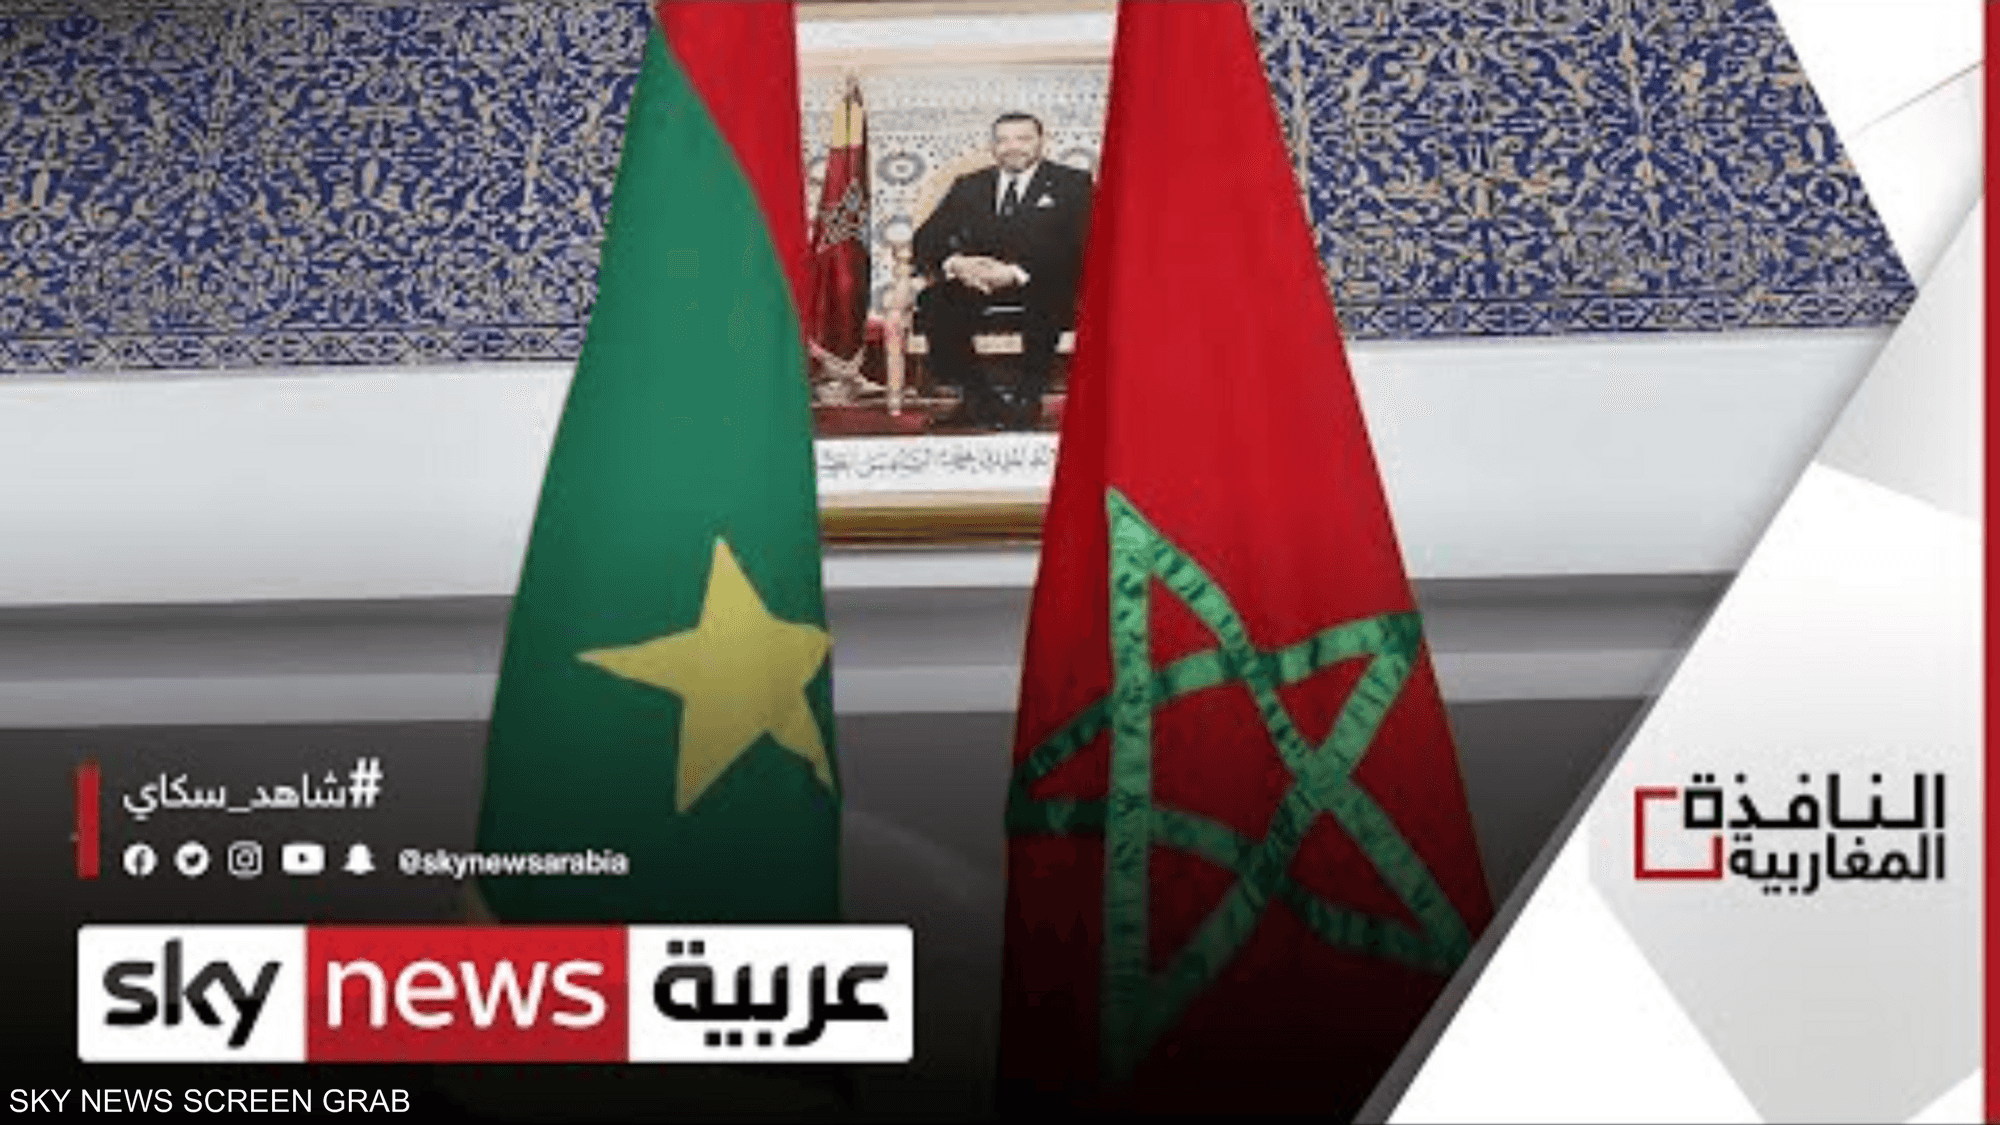 المغرب وموريتانيا يبحثان التعاون الاقتصادي